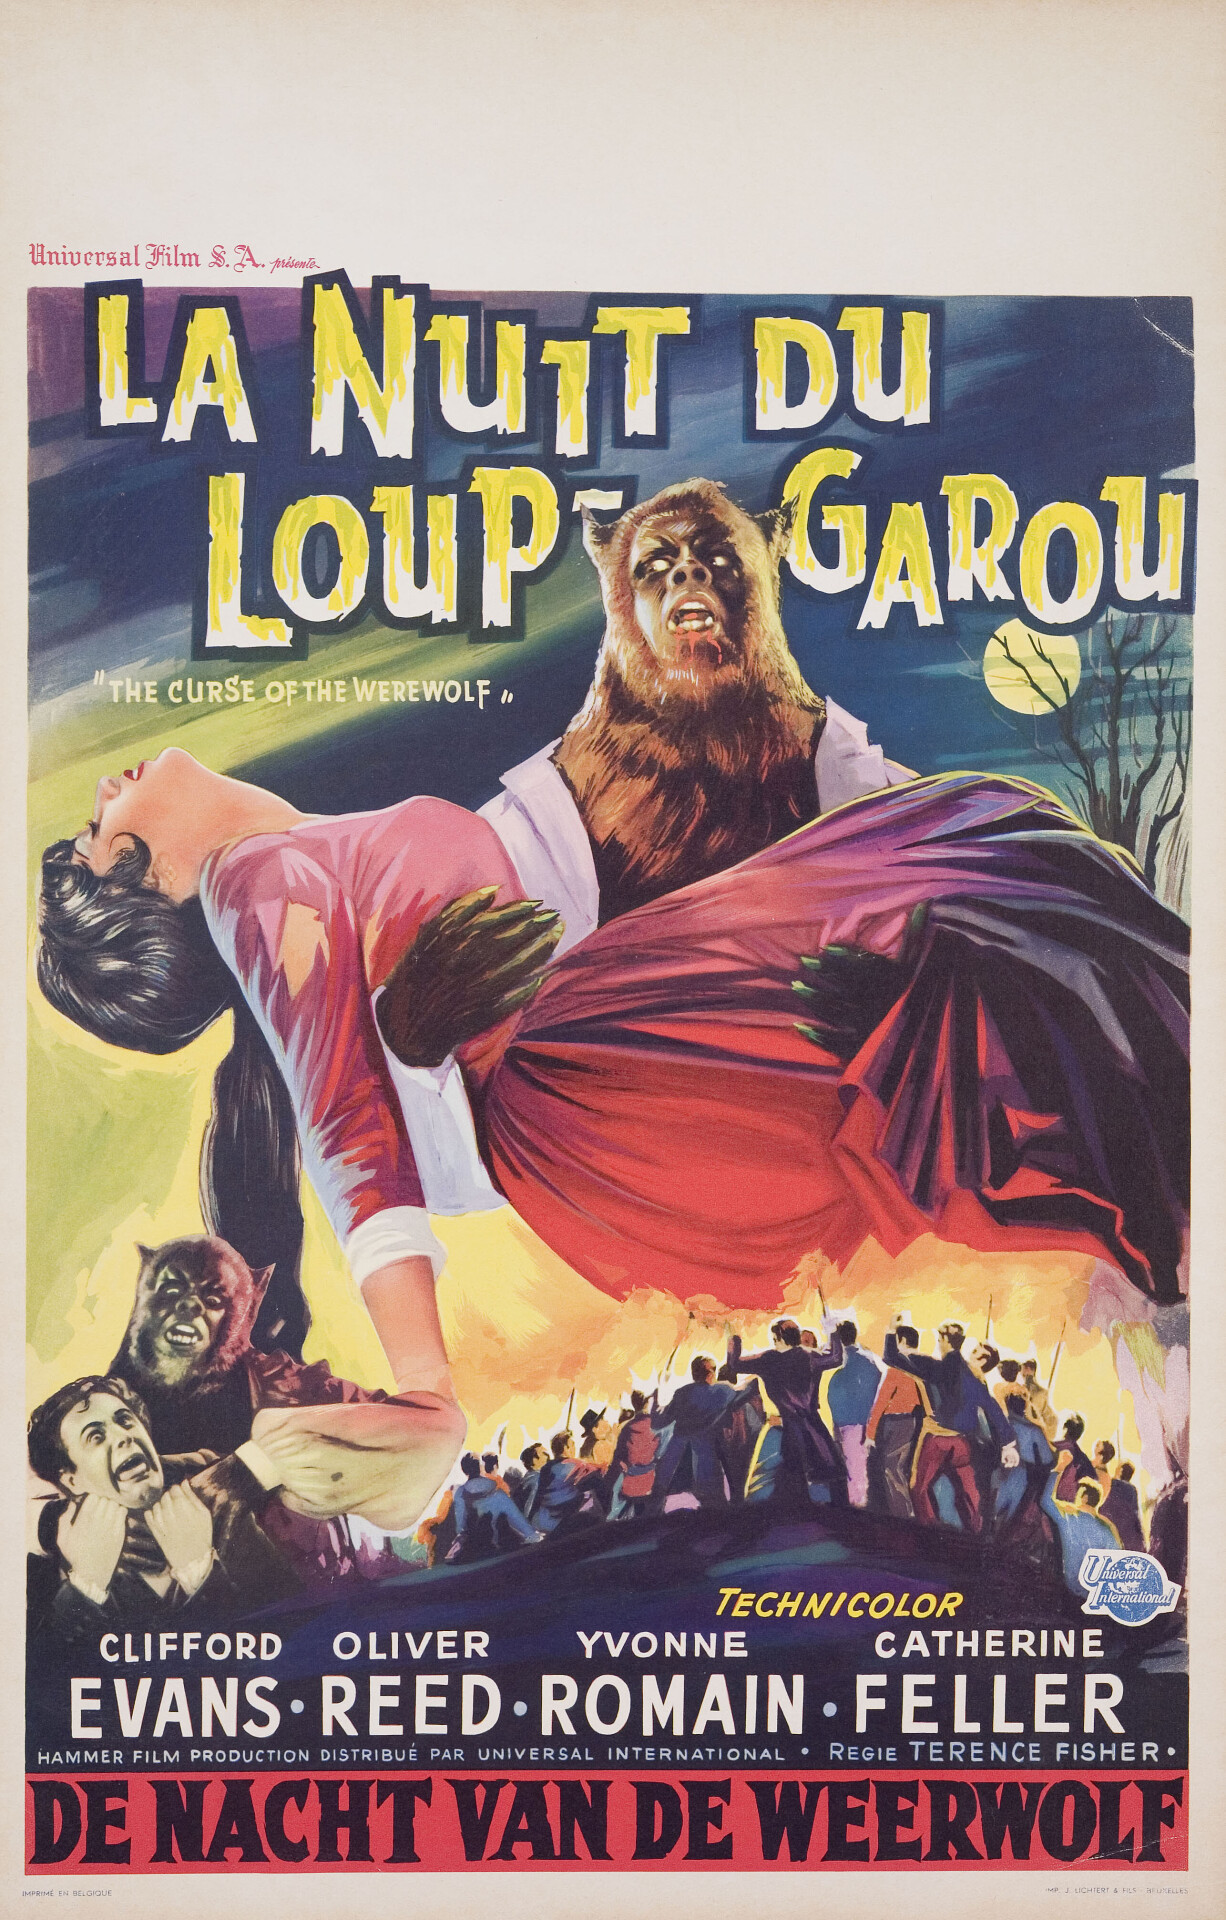 Проклятие оборотня (The Curse of the Werewolf, 1961), режиссёр Теренс Фишер, бельгийский постер к фильму (Hummer horror, 1961 год)